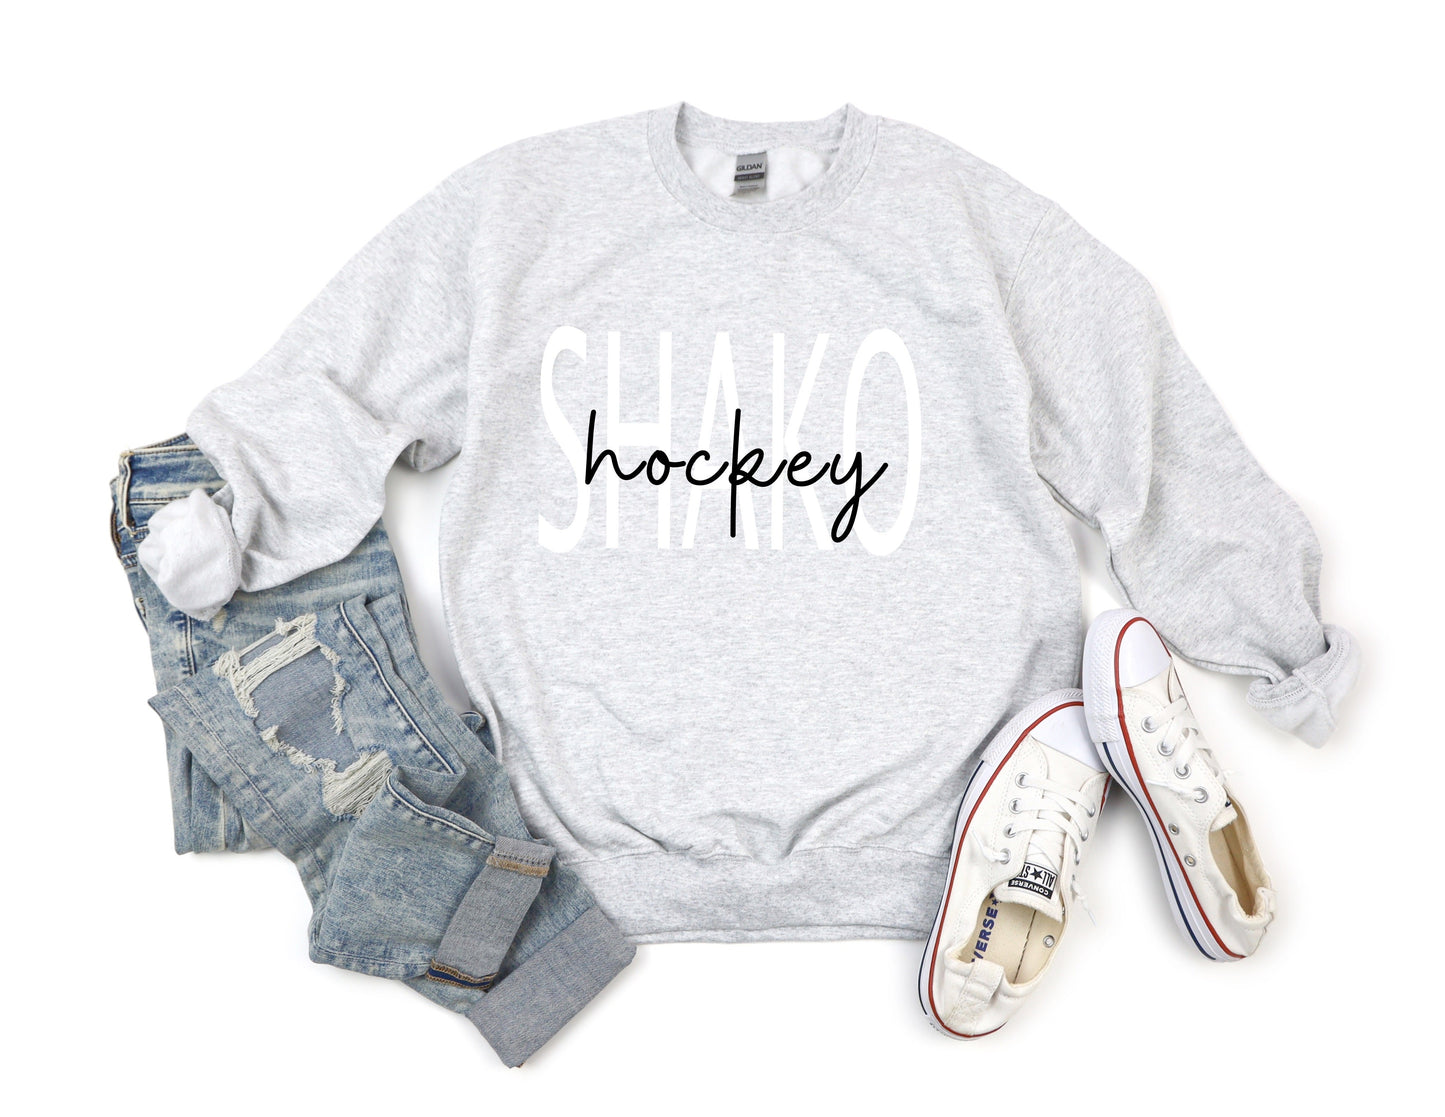 Shakopee Hockey Cowl Neck. Shako hockey sweatshirt